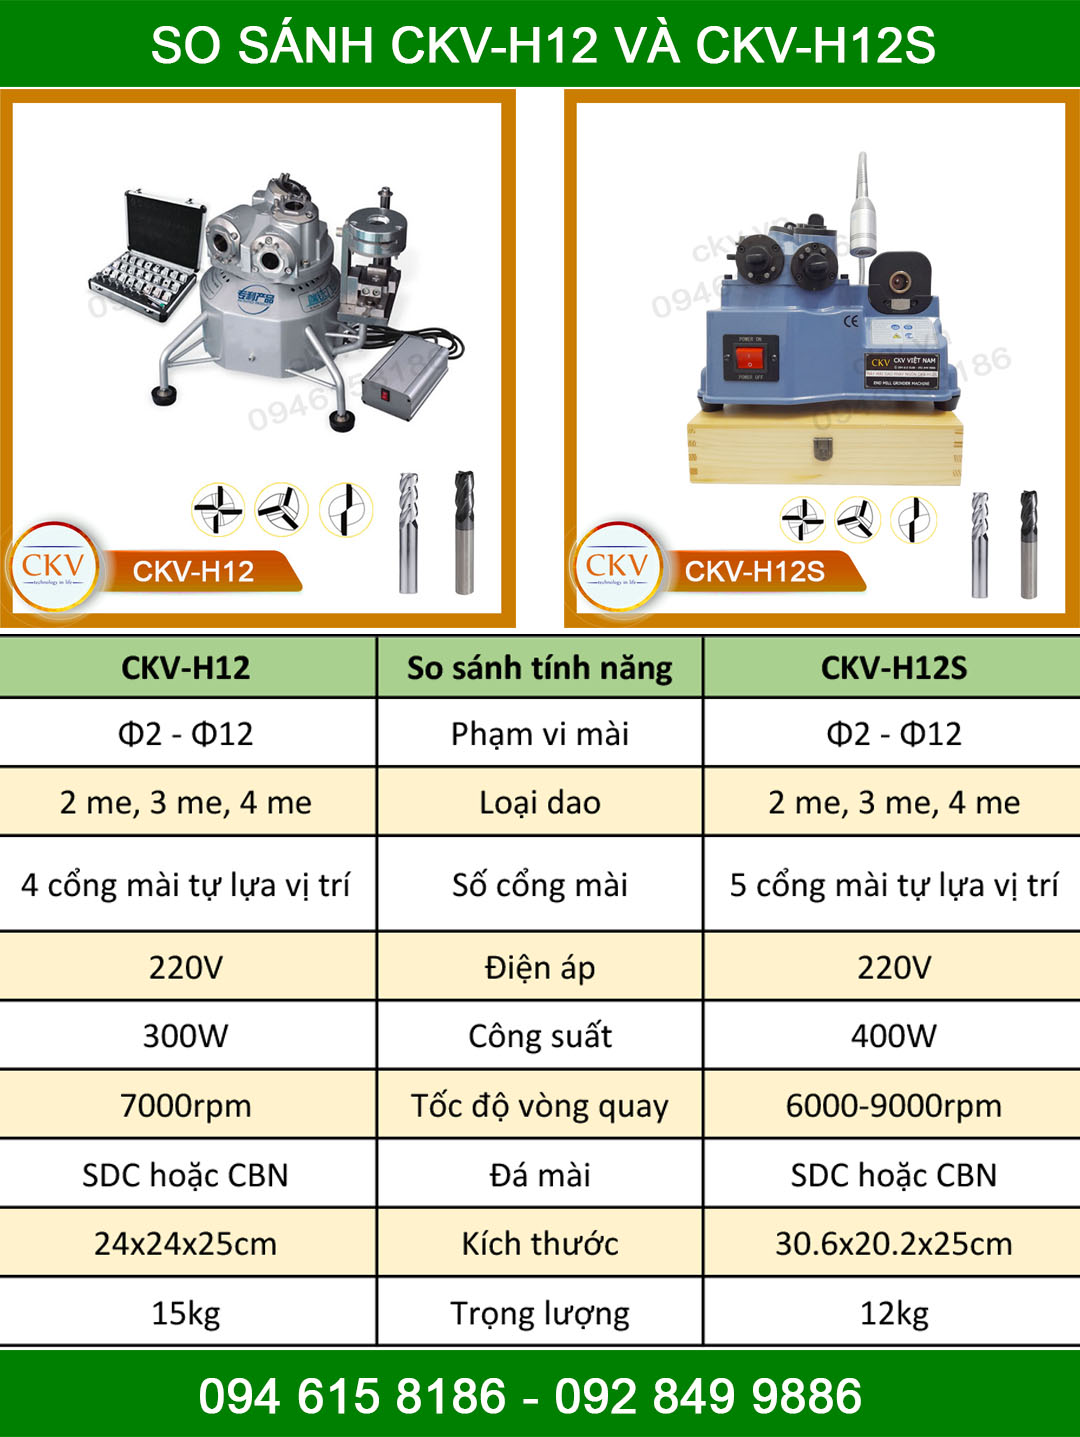 So sánh CKV-H12 và CKV-H12S